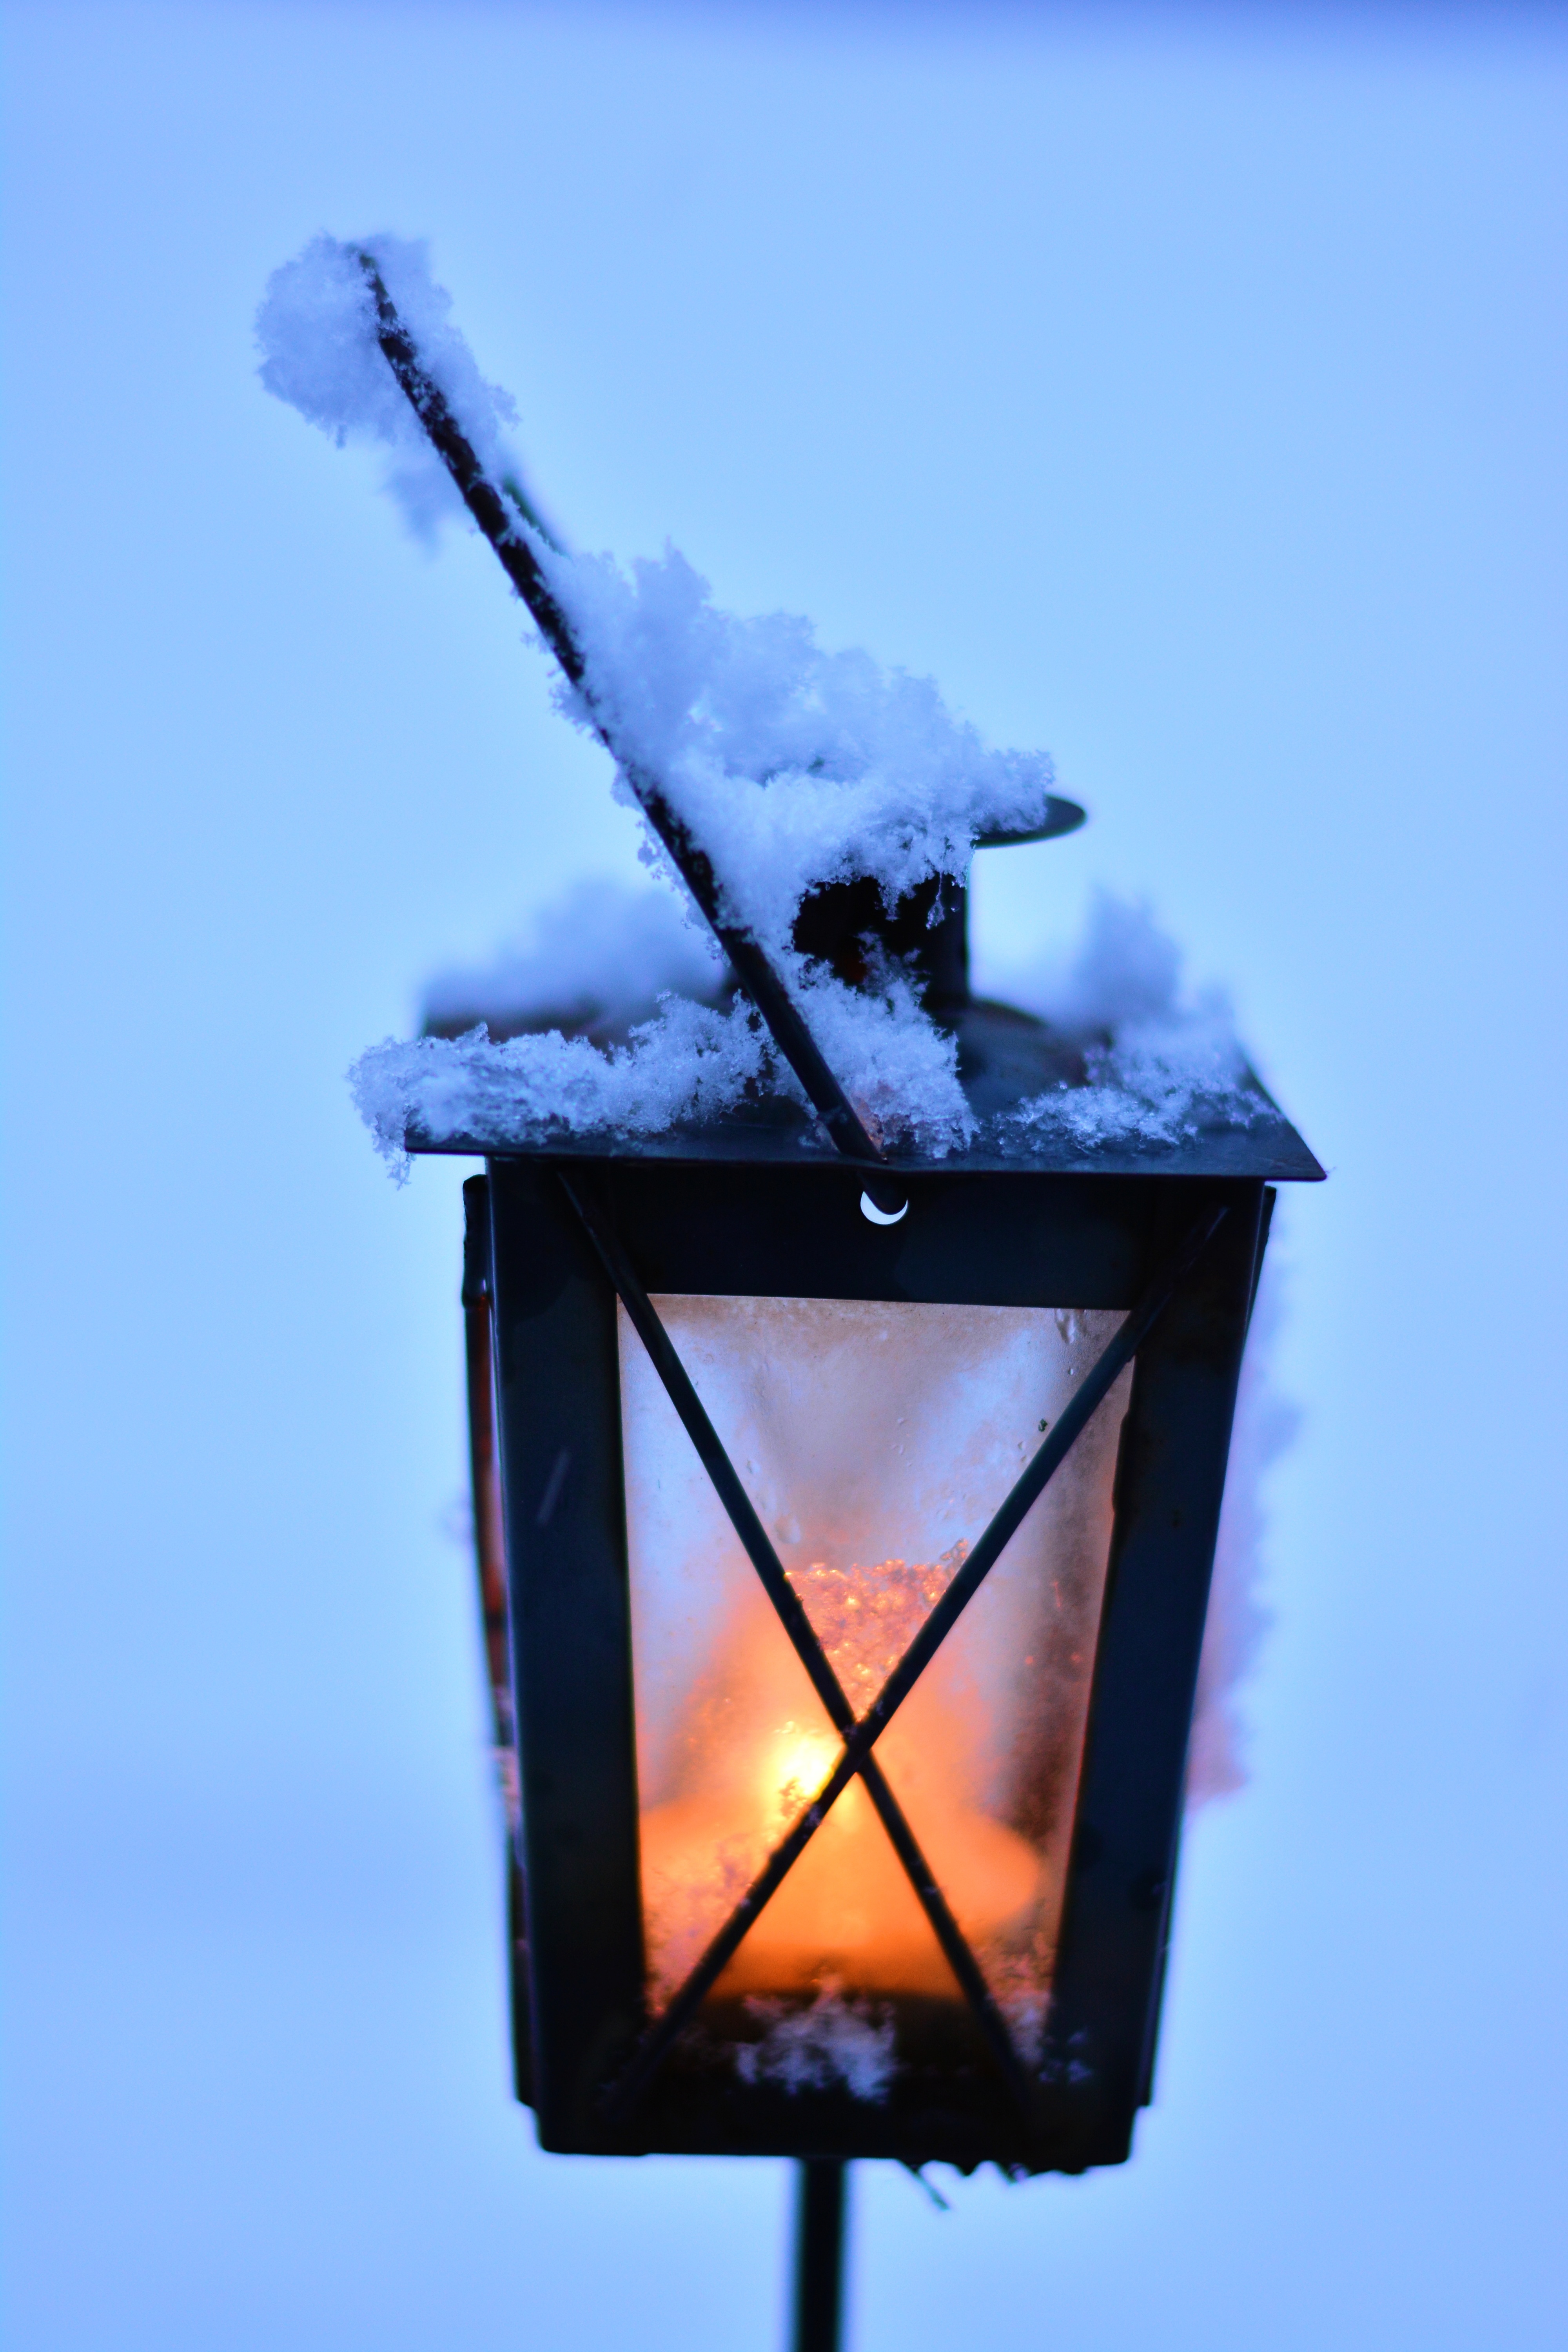 Hautalyhdyssä palaa kynttilä ja lyhdyn päälle on satanut lunta. On sininen hetki.